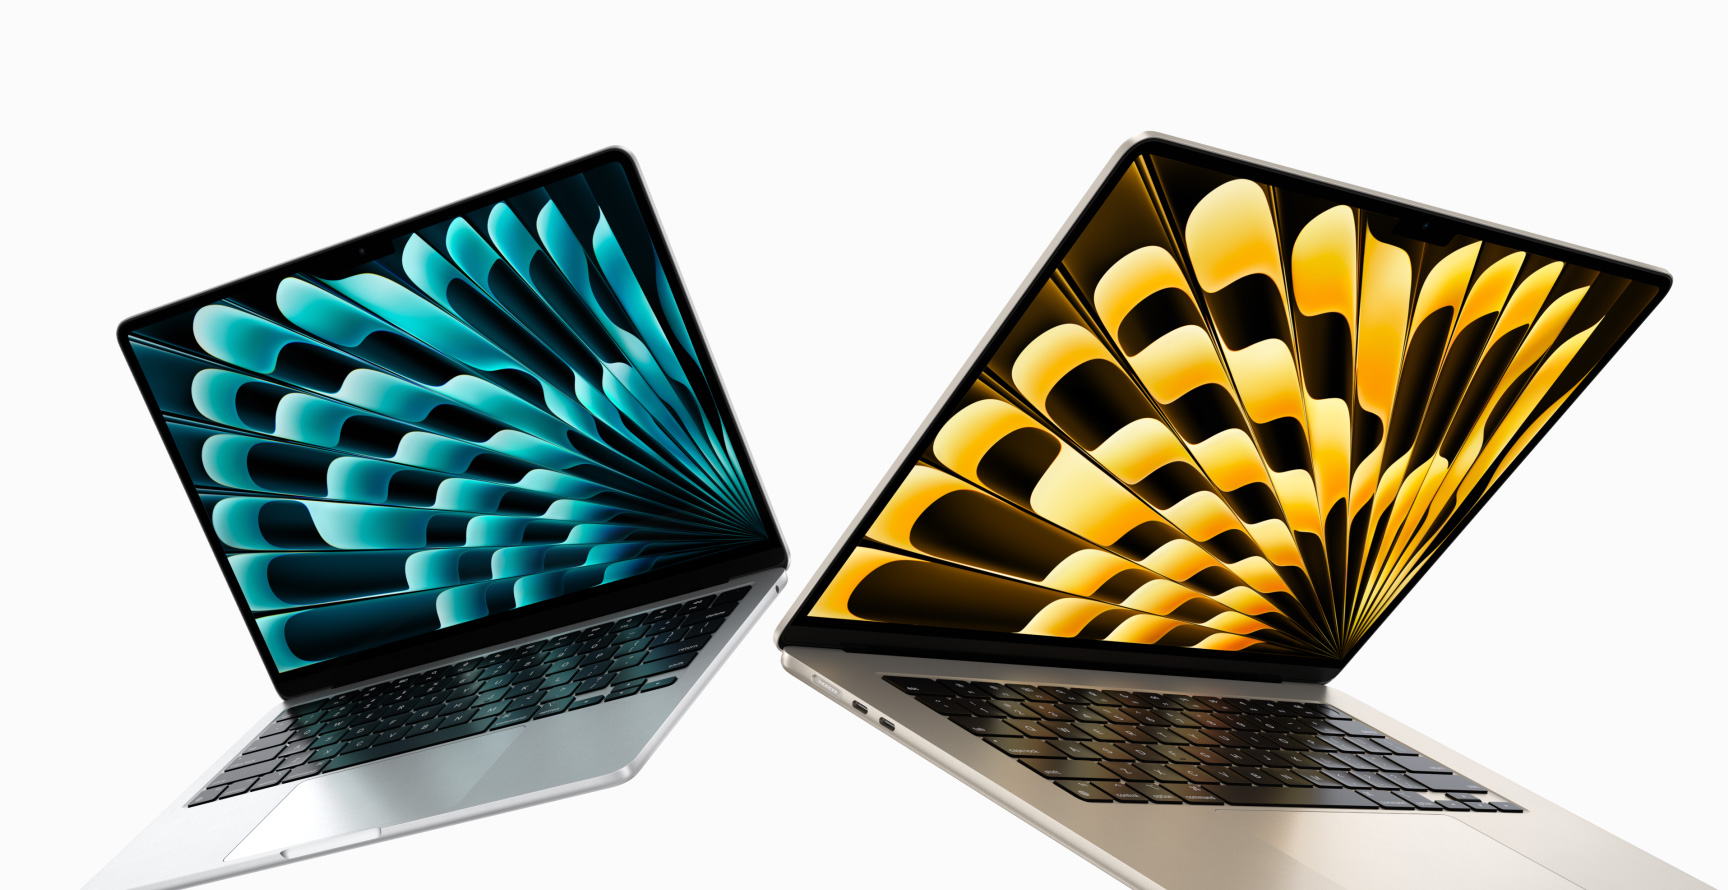 صورة أمامية لجهاز MacBook Air موديل 13 إنش وموديل 15 إنش باللون سماء الليل وضوء النجوم تقارن حجم الشاشة (قطرياً).